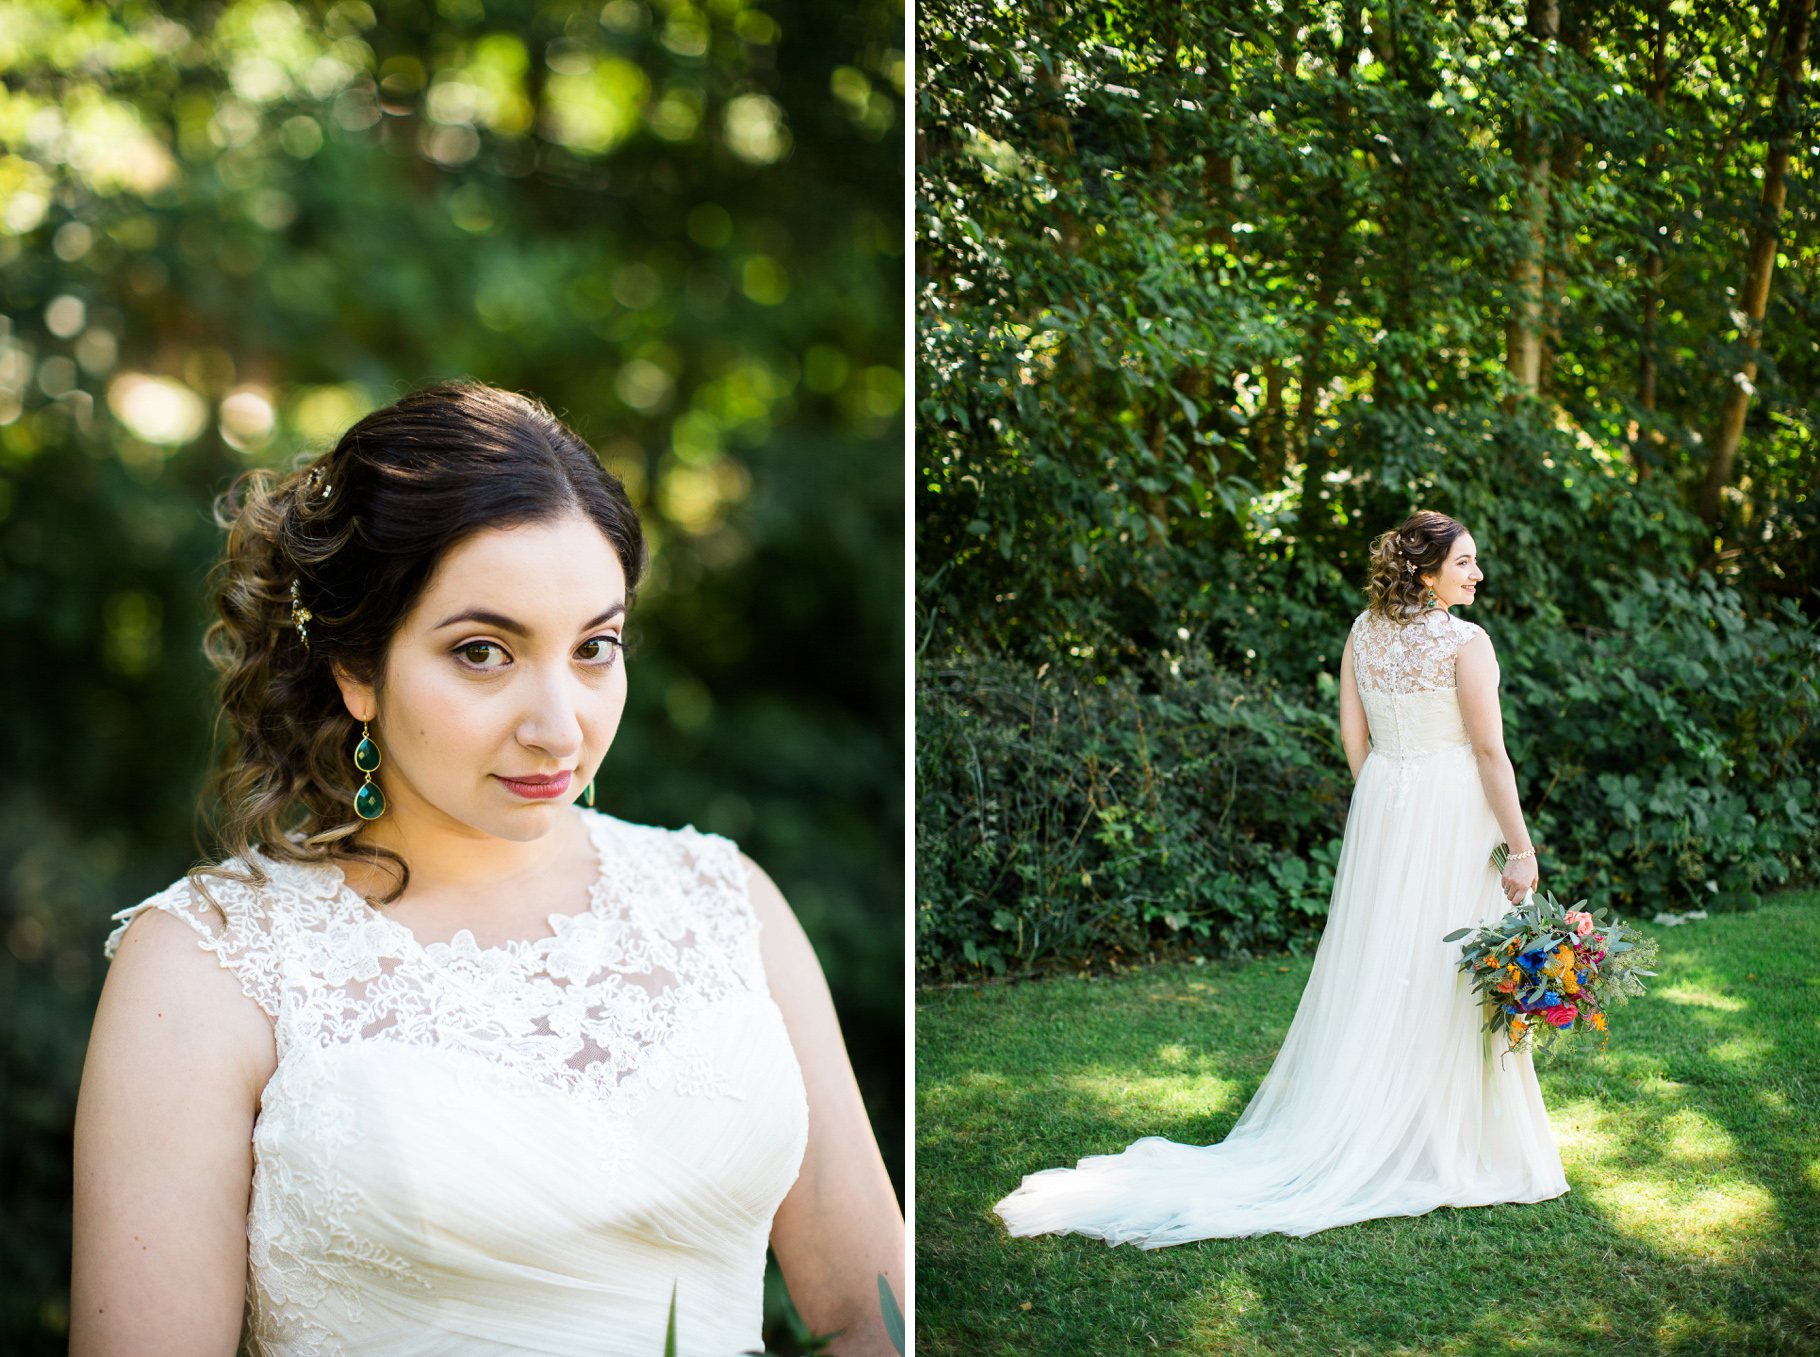 22-bridal-portraits-lace-dress-vibrant-colorful-bouquet-edmonds-seattle-wedding-photographer.jpg